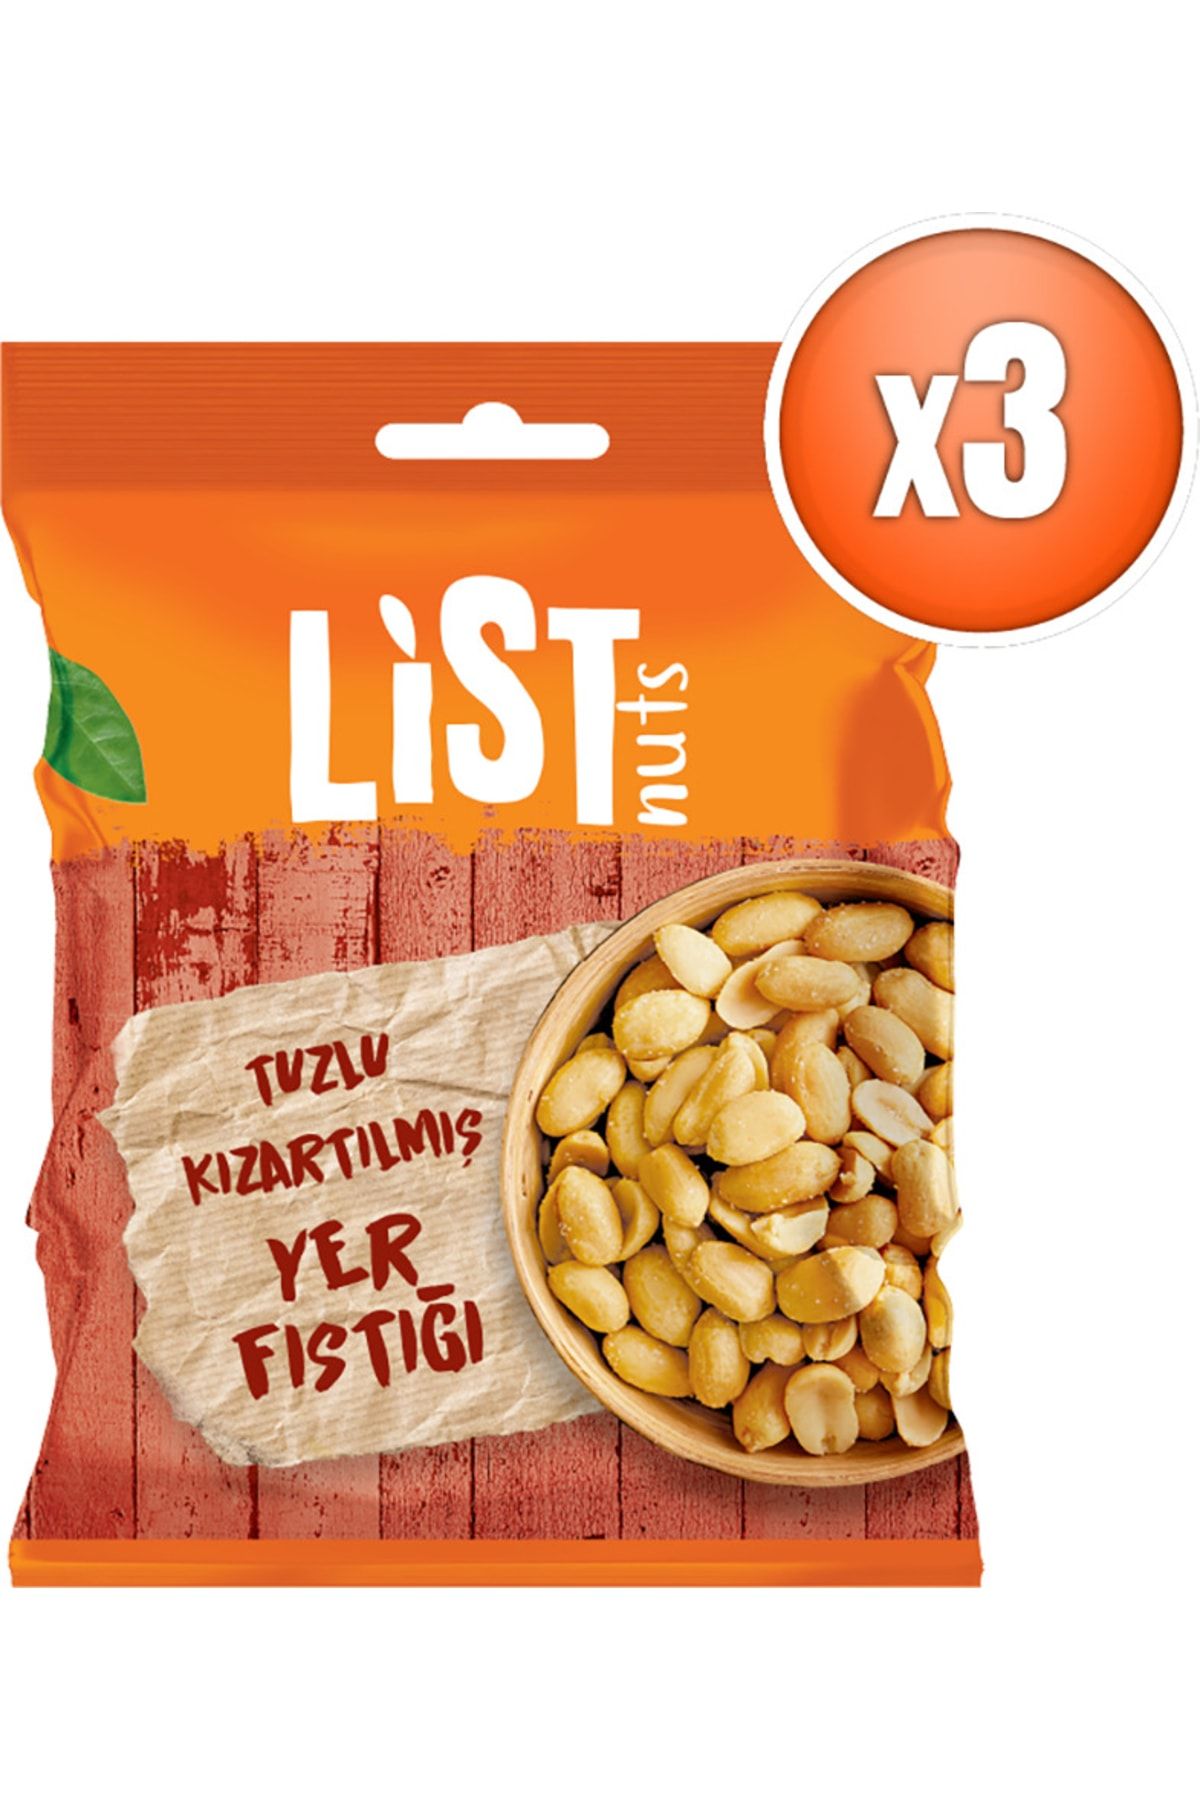 List Nuts Kızarmış Yer Fıstığı 3 X 150 G